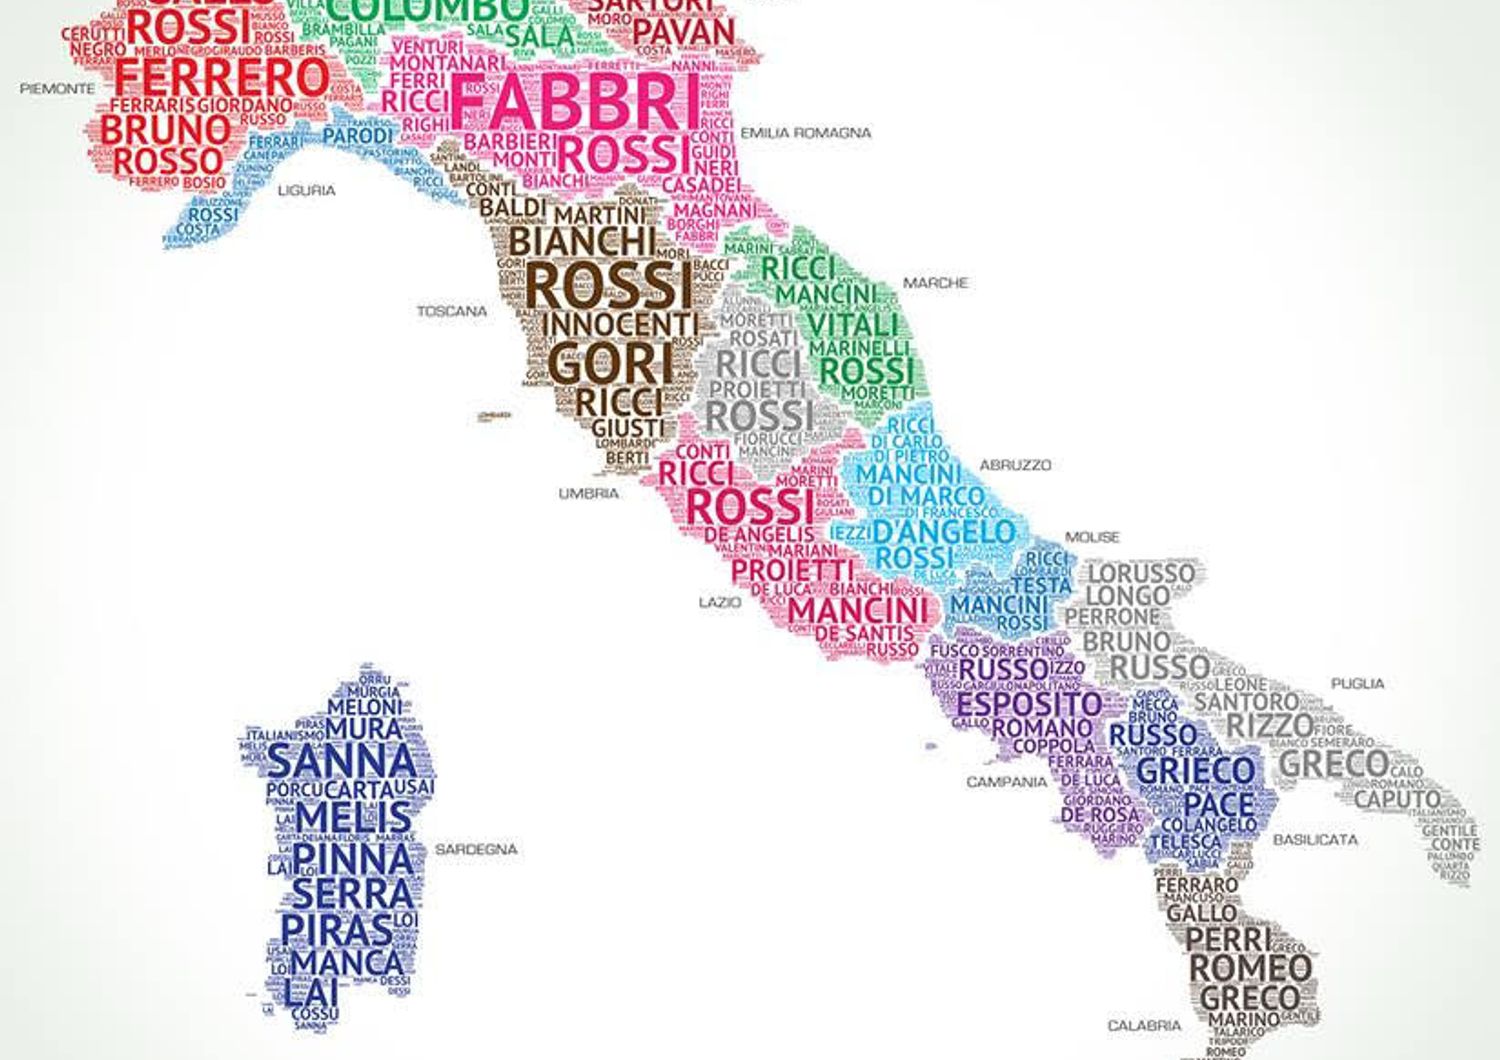 Rossi, Russo, Ferrari ed Esposito i cognomi pi&ugrave; diffusi. Una mappa